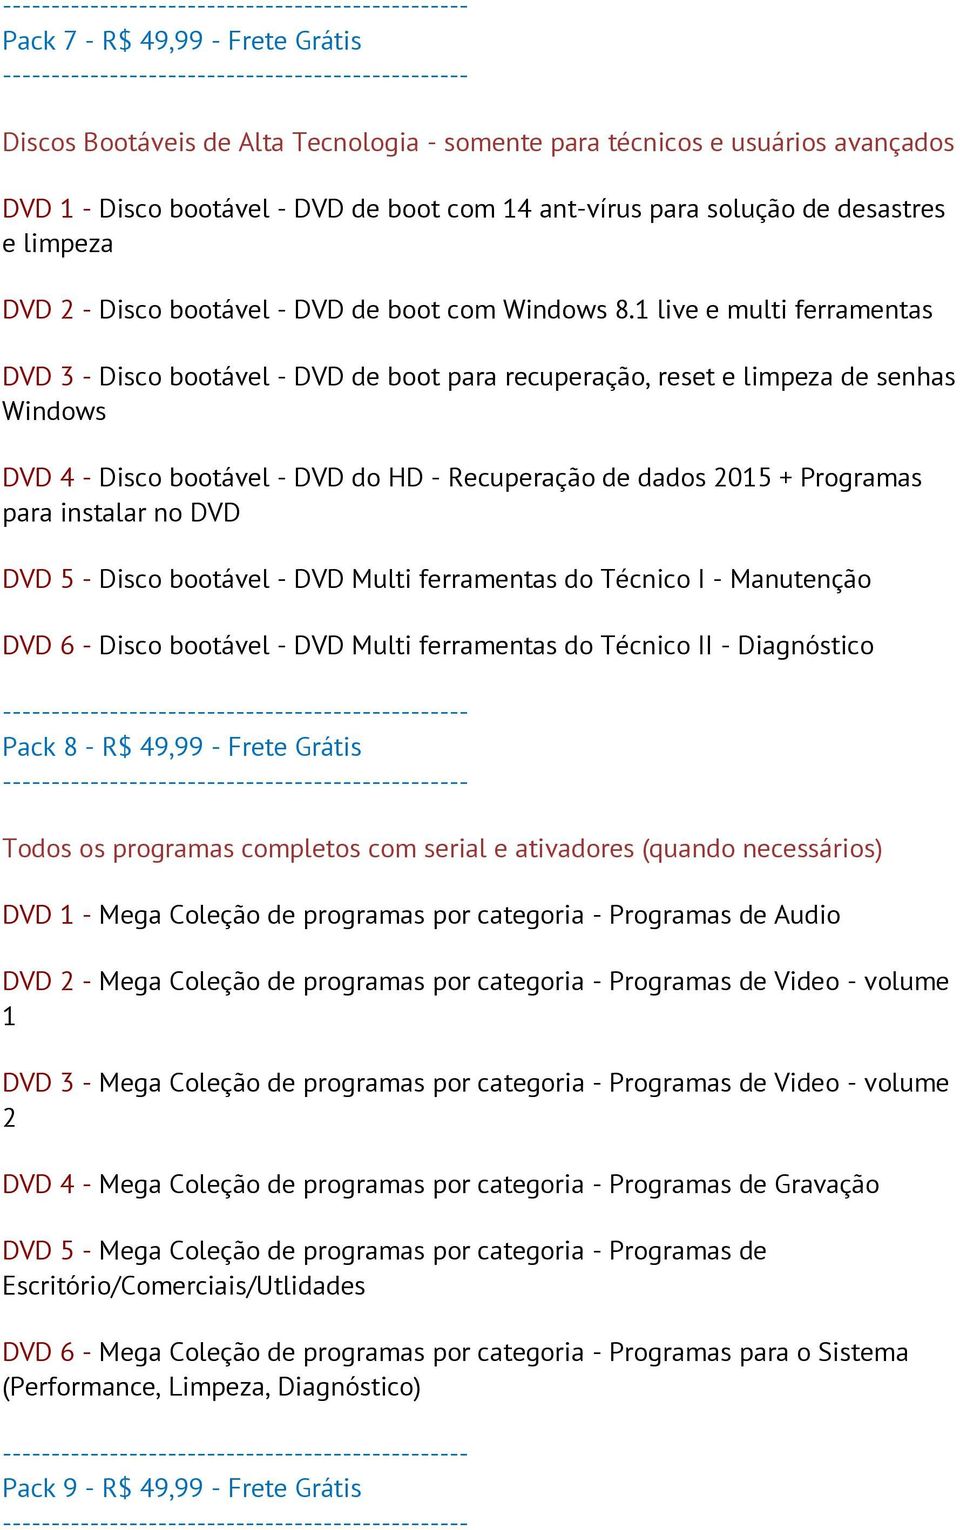 1 live e multi ferramentas DVD 3 - Disco bootável - DVD de boot para recuperação, reset e limpeza de senhas Windows DVD 4 - Disco bootável - DVD do HD - Recuperação de dados 2015 + Programas para